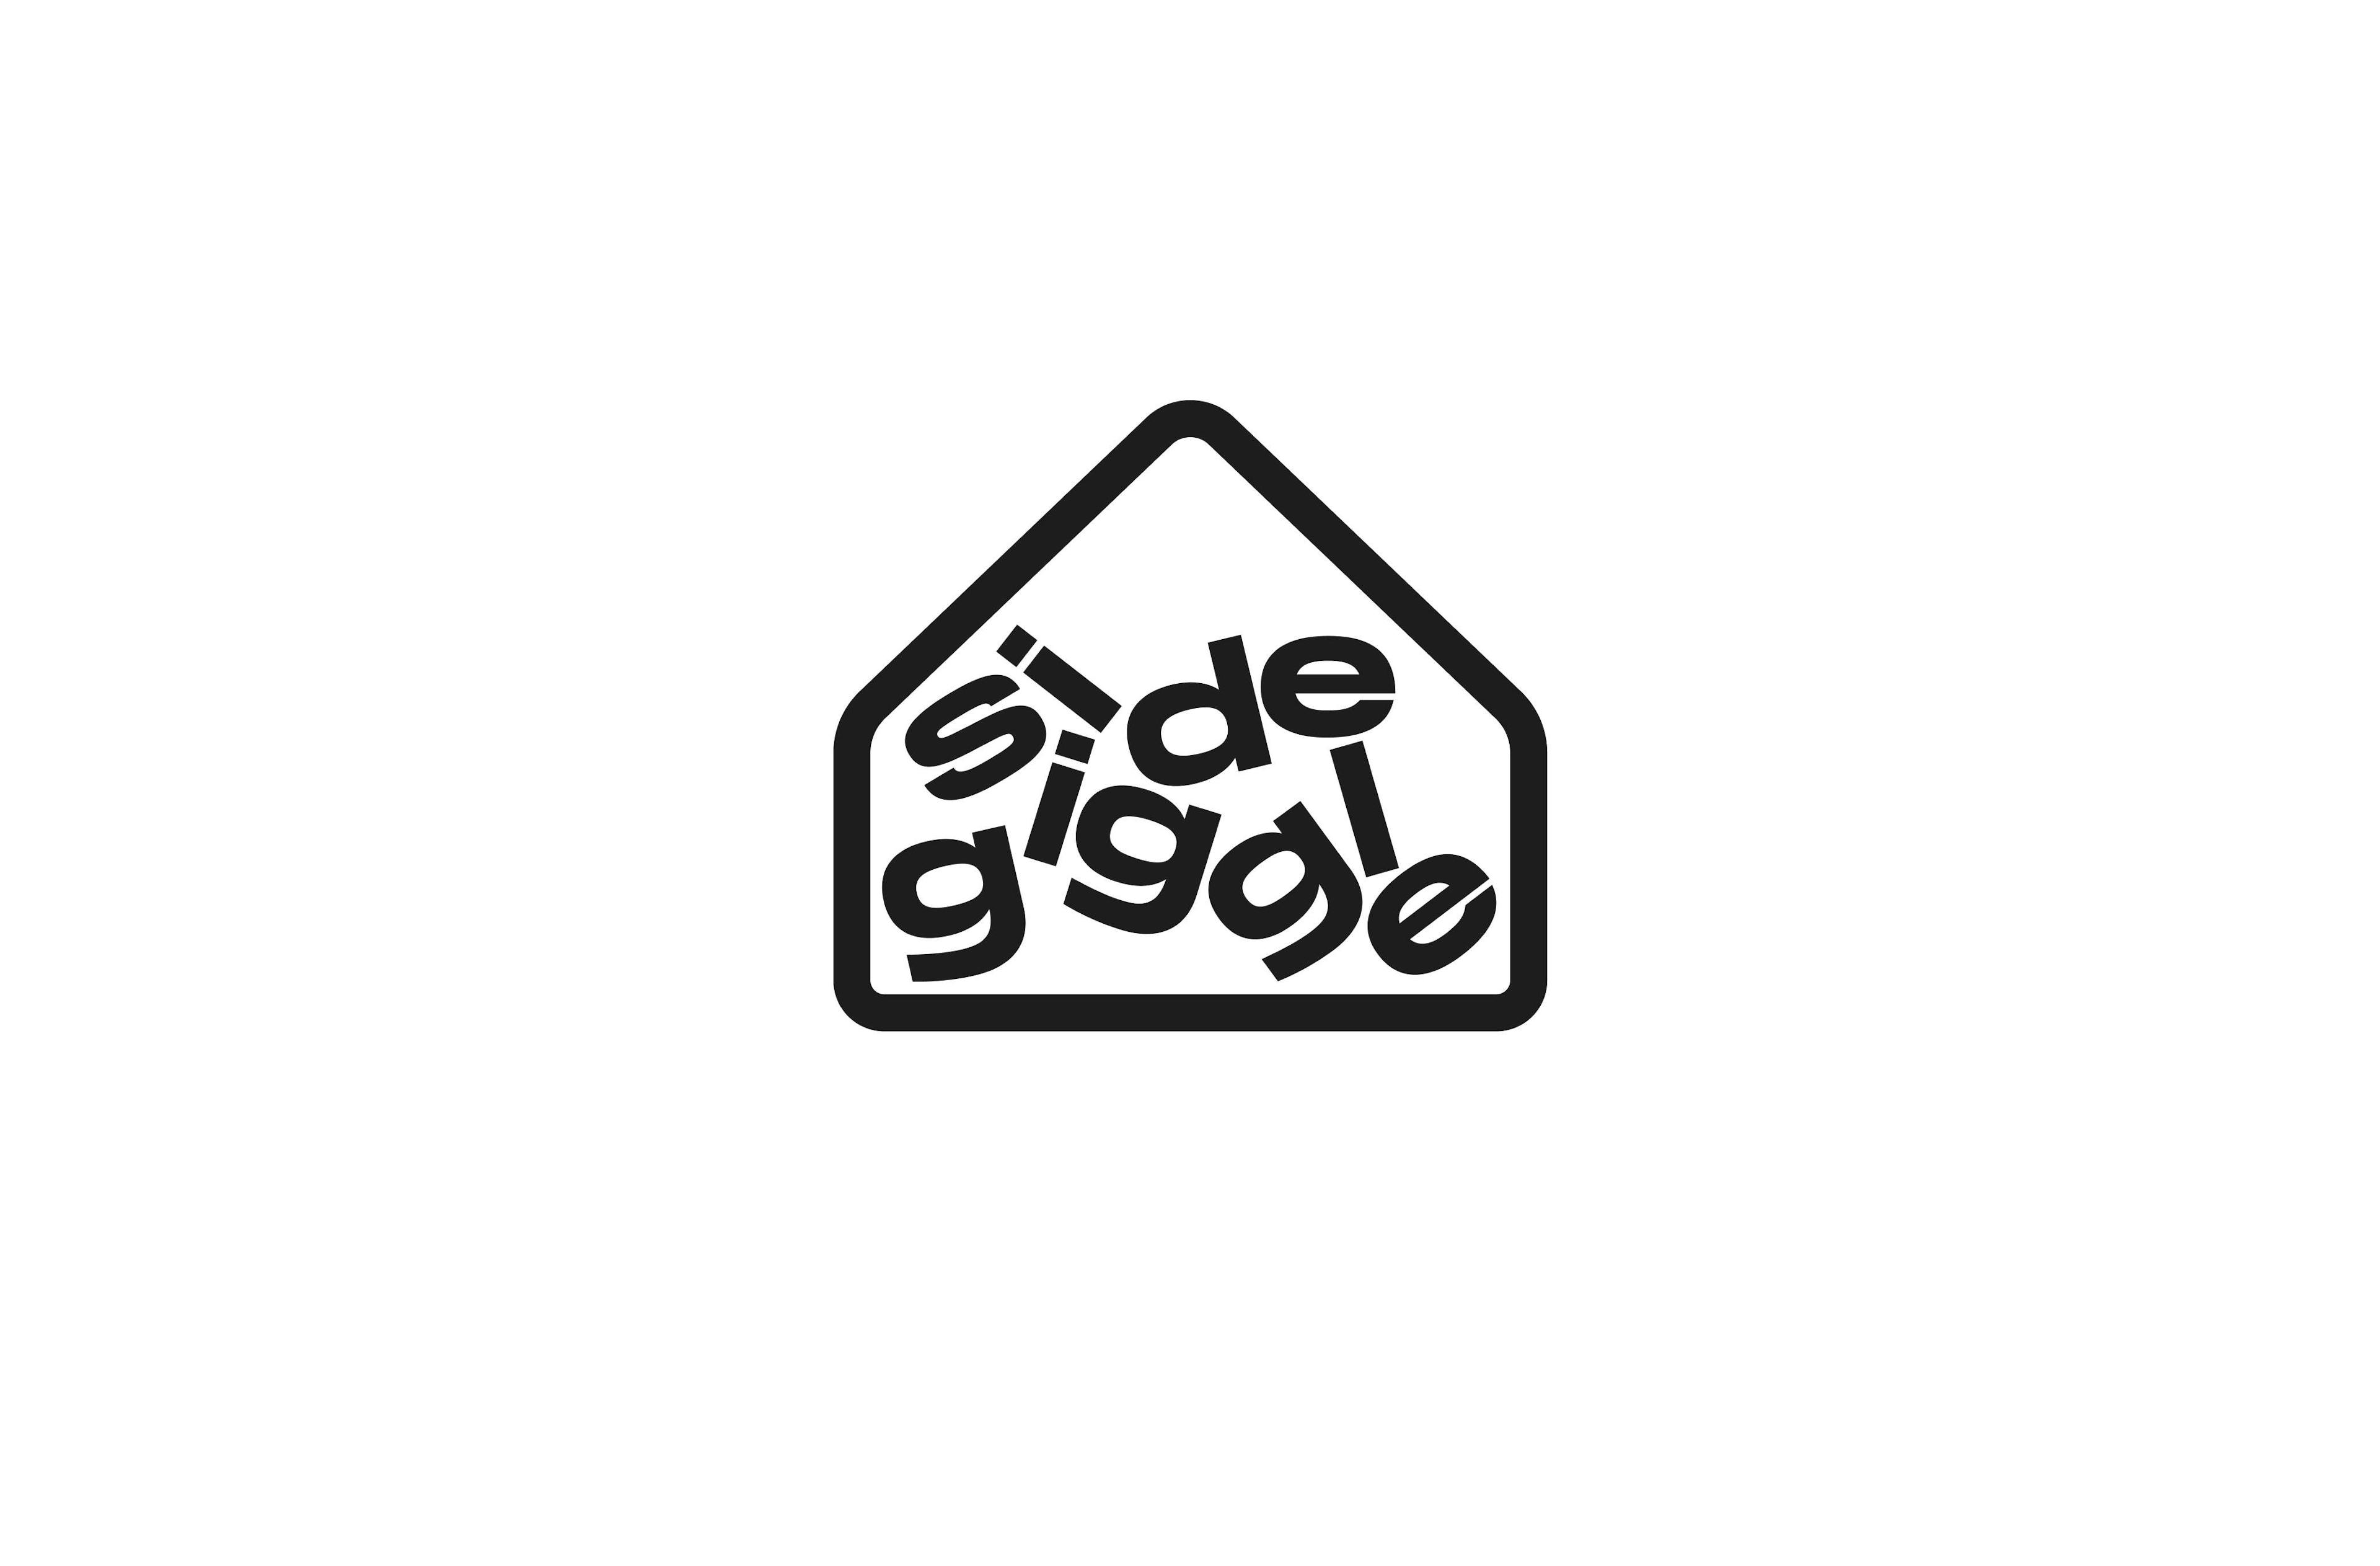 Sidegiggle logo